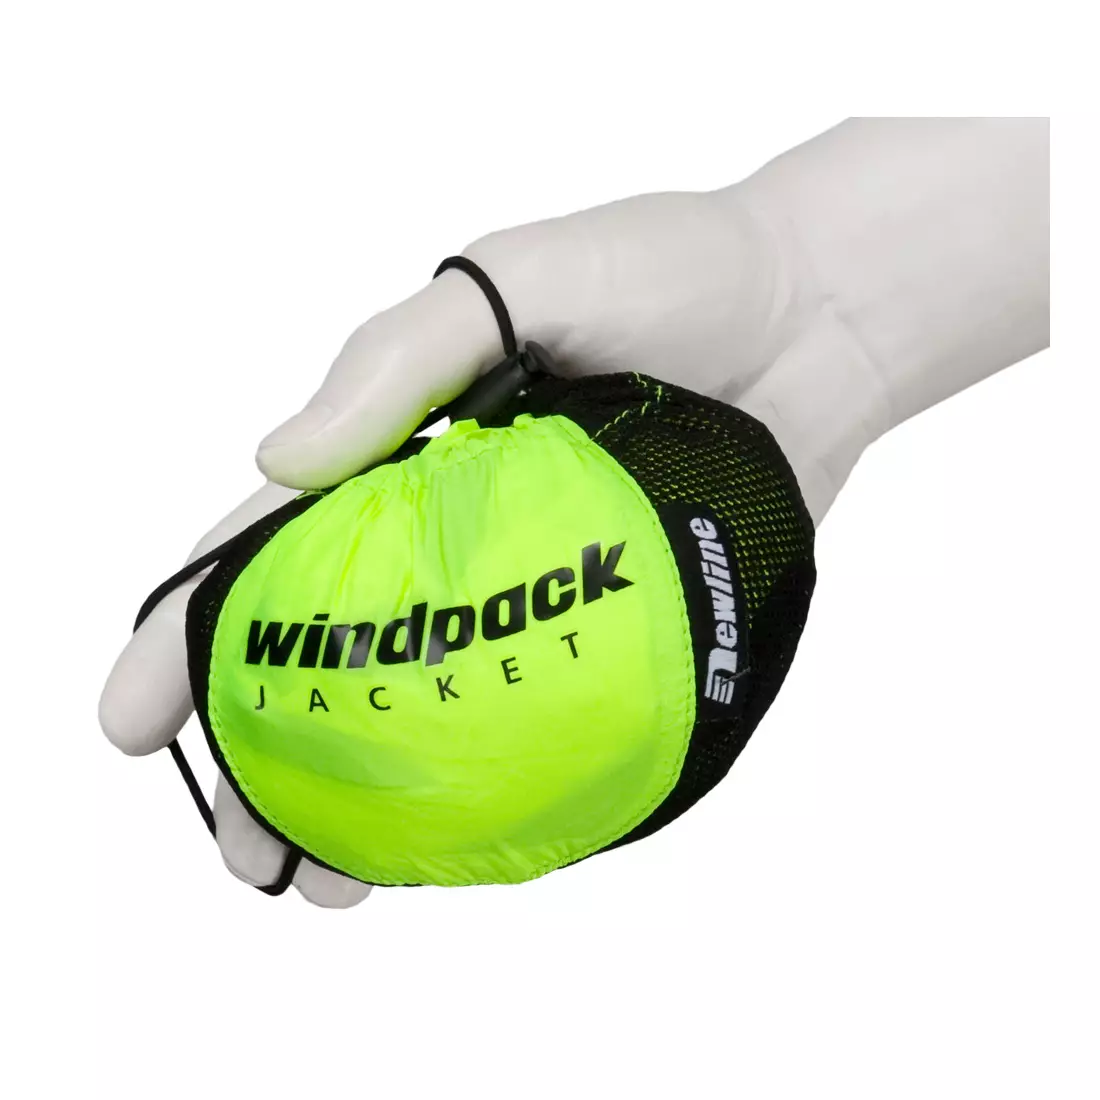 NEWLINE WINDPACK JACKET - ultraleichte Sport-Windjacke 14176-090, Farbe: Fluor